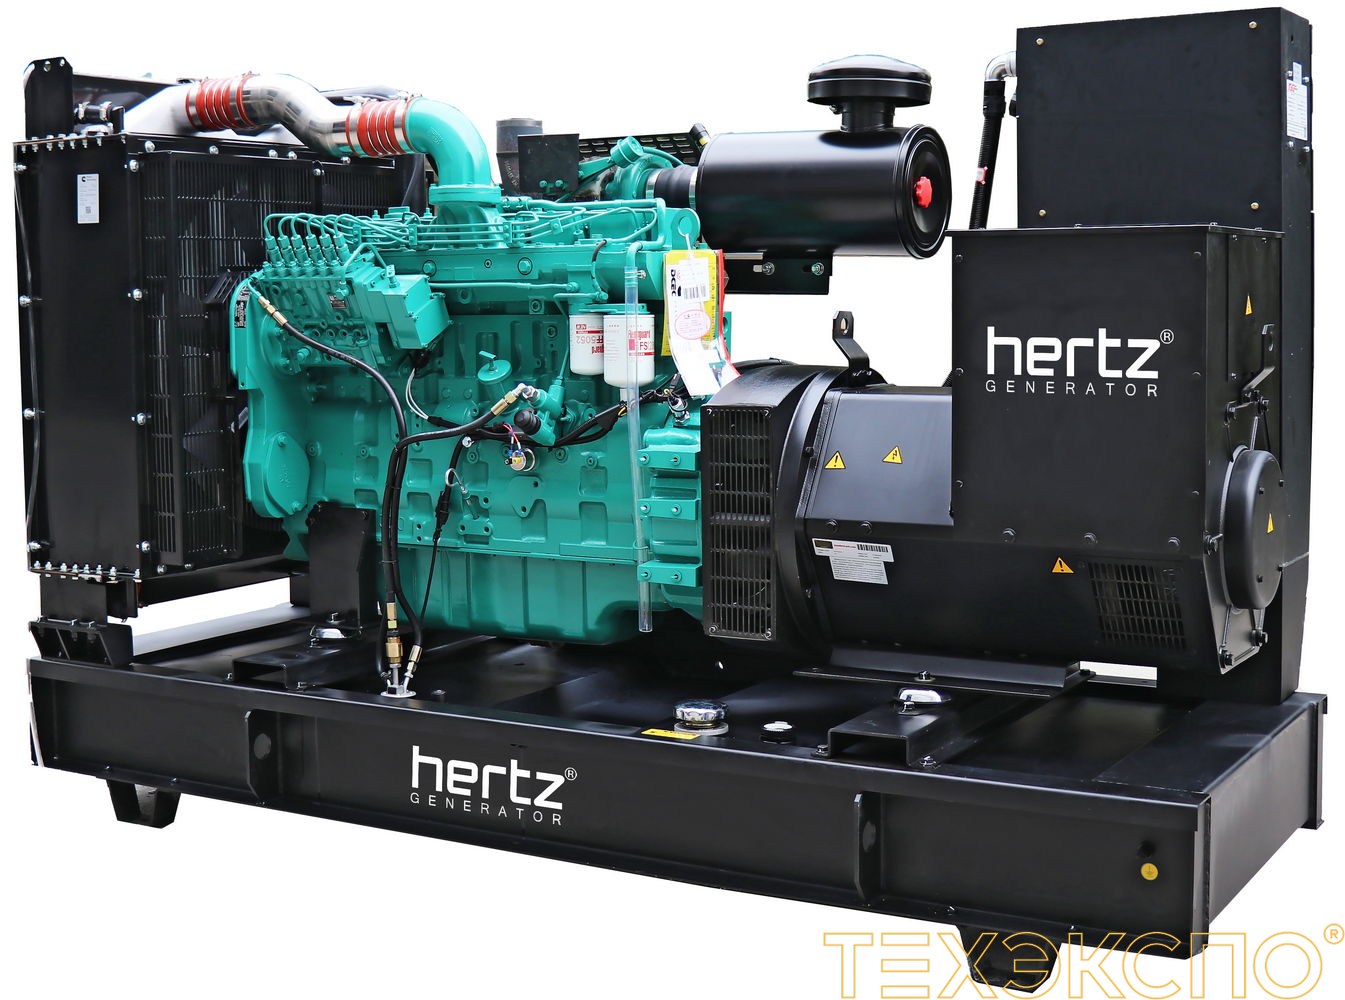 HERTZ HG700 CL - ДЭС 509 кВт в Санкт-Петербурге за 12 267 912 рублей | Дизельная электростанция в Техэкспо